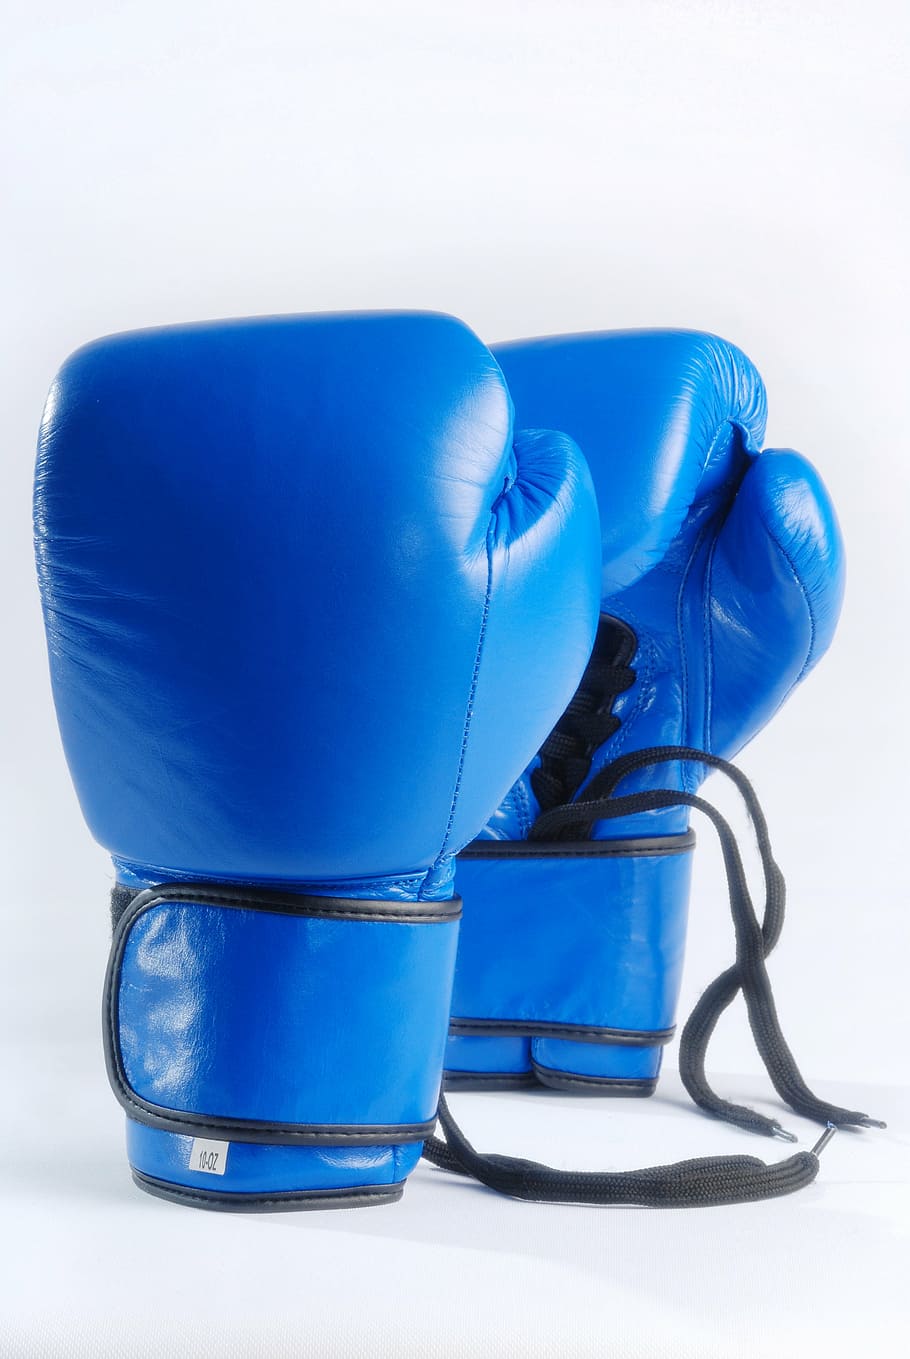 ペア, 青, ボクシンググローブ, 青のボクシンググローブ, 白い背景で隔離, 戦い, スポーツ, ボクシング, 機器, 競争